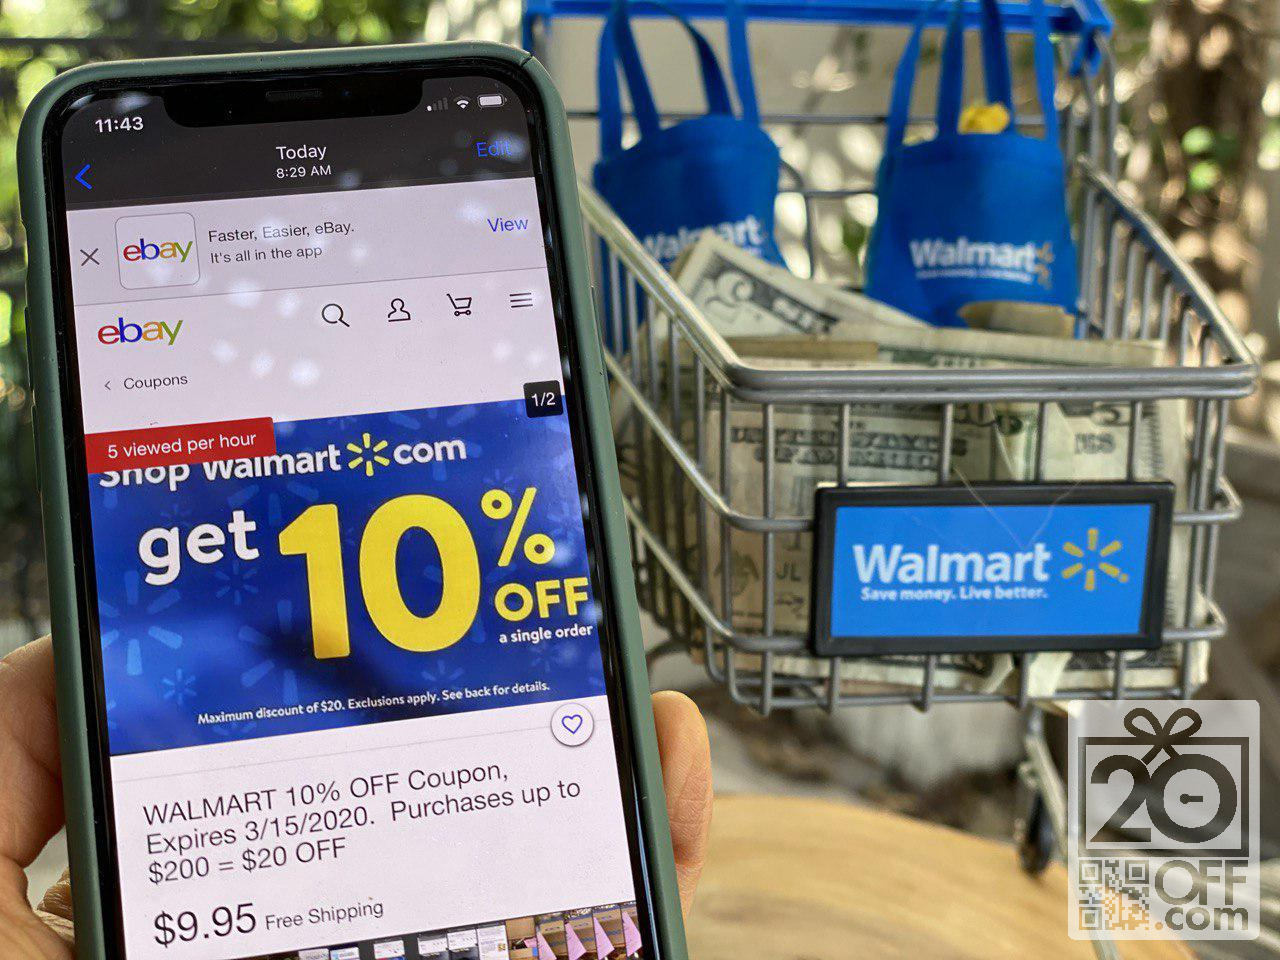 Walmart 10% OFF Coupon